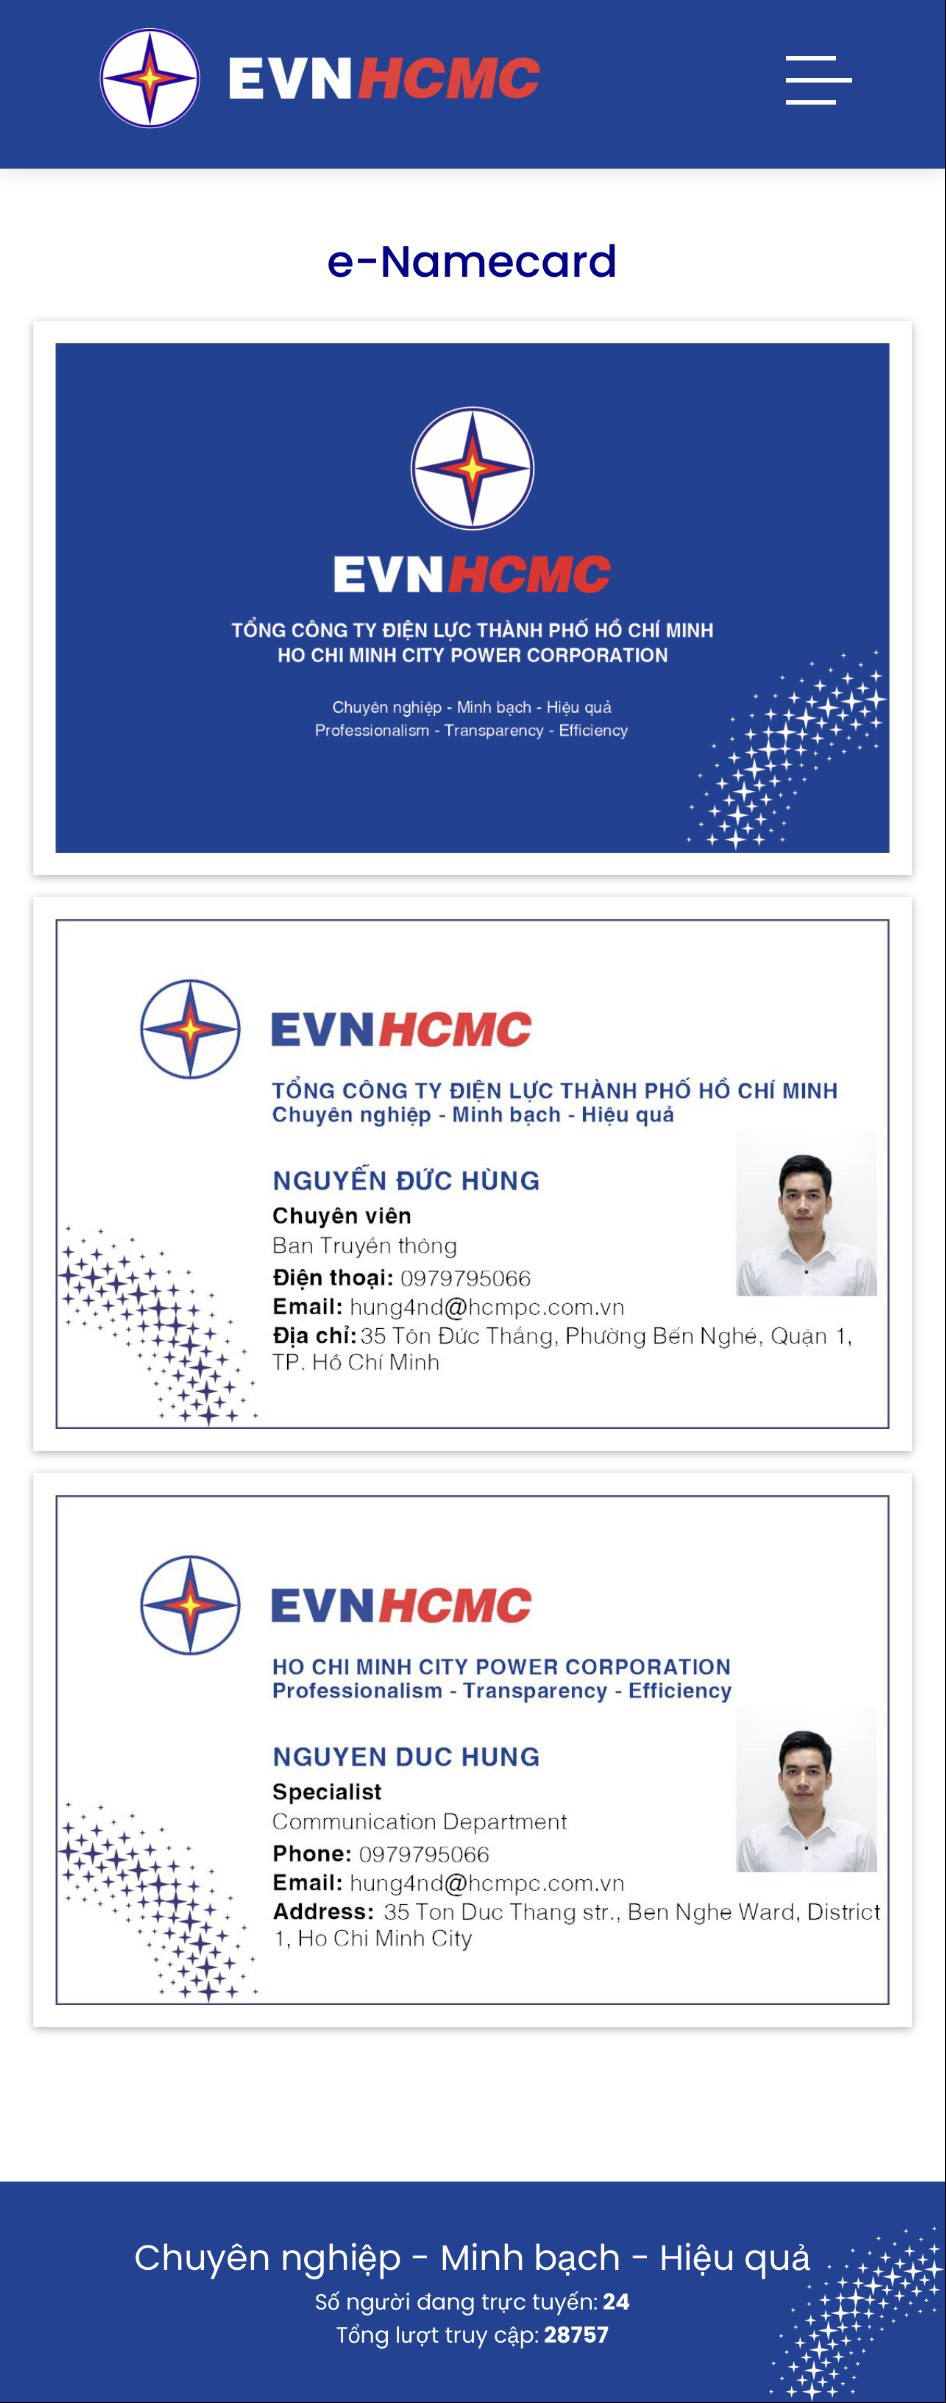 EVNHCMC số hóa hoạt động giao tiếp với danh thiếp điện tử - Ảnh 3.